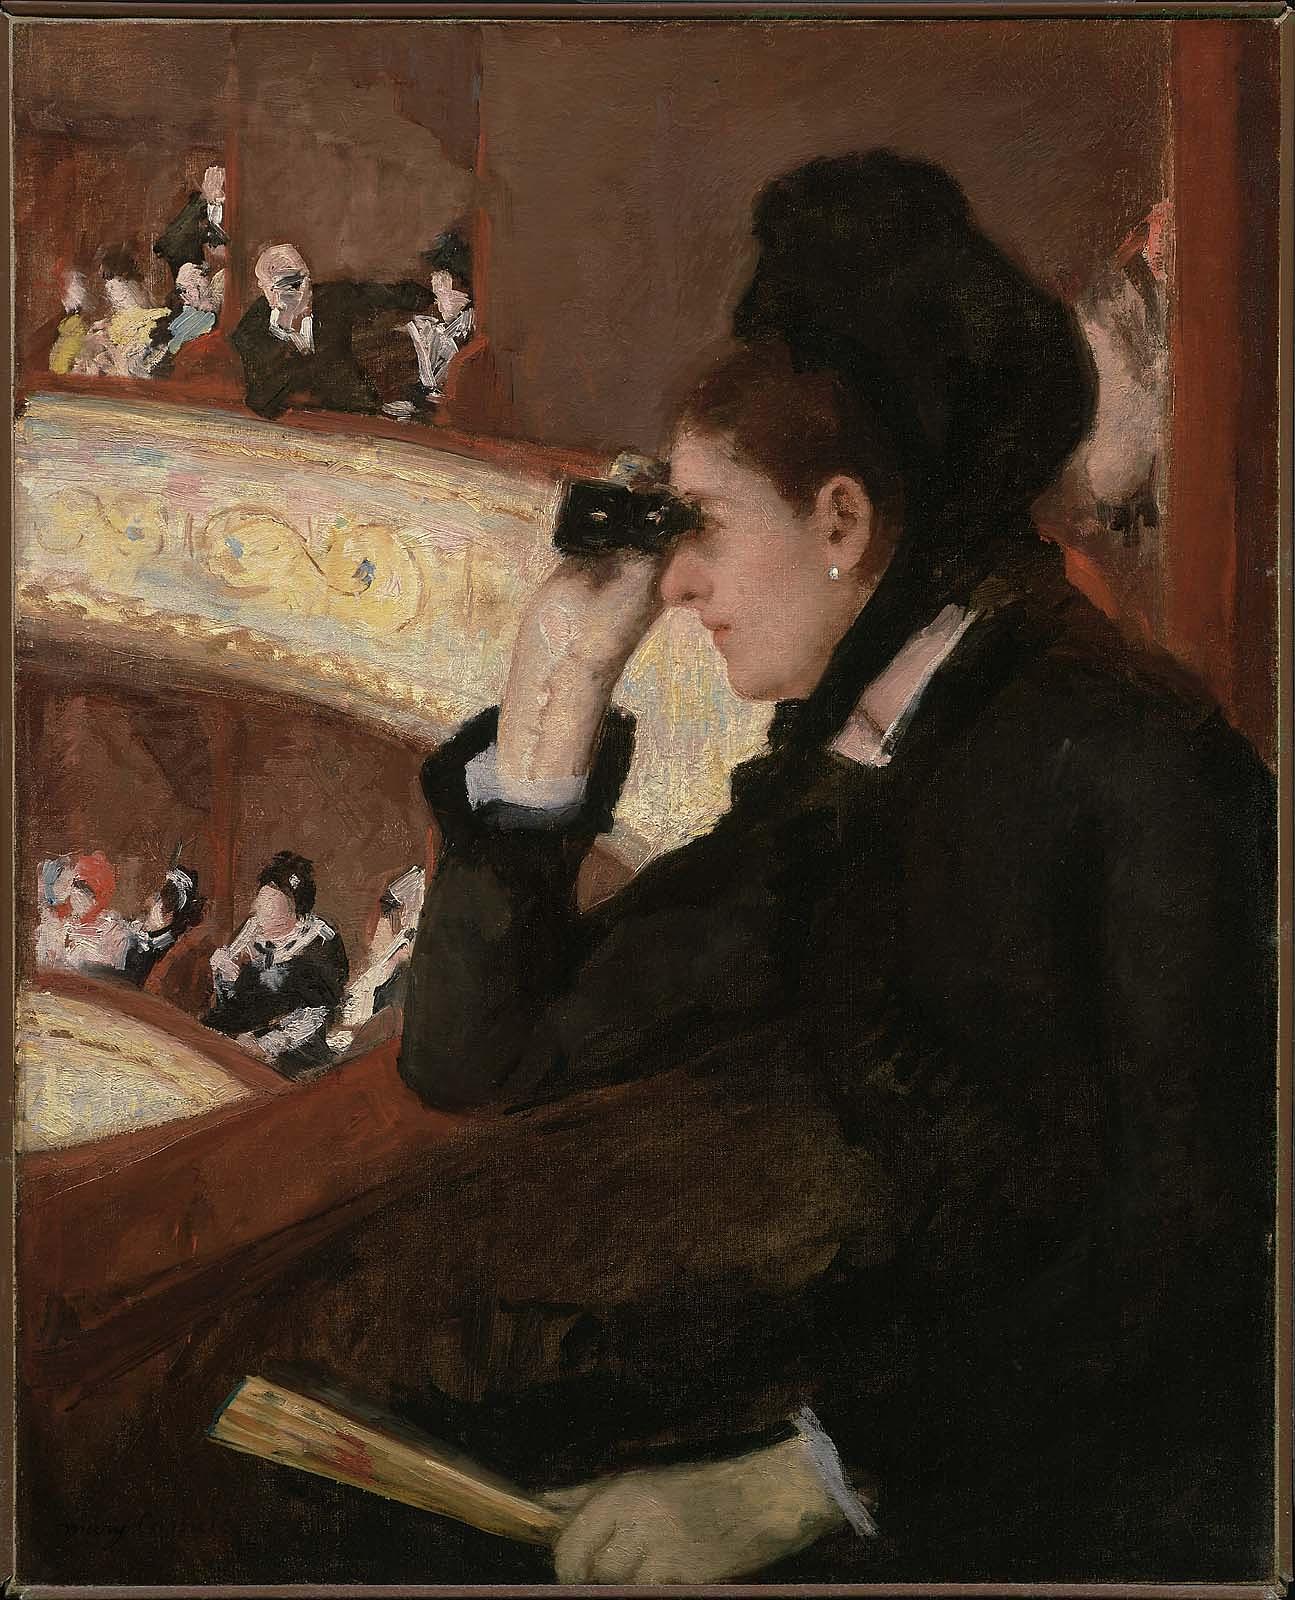 在客厅里 by 玛丽· 卡萨特 - 1878 - 81.28 x 66.04 cm 